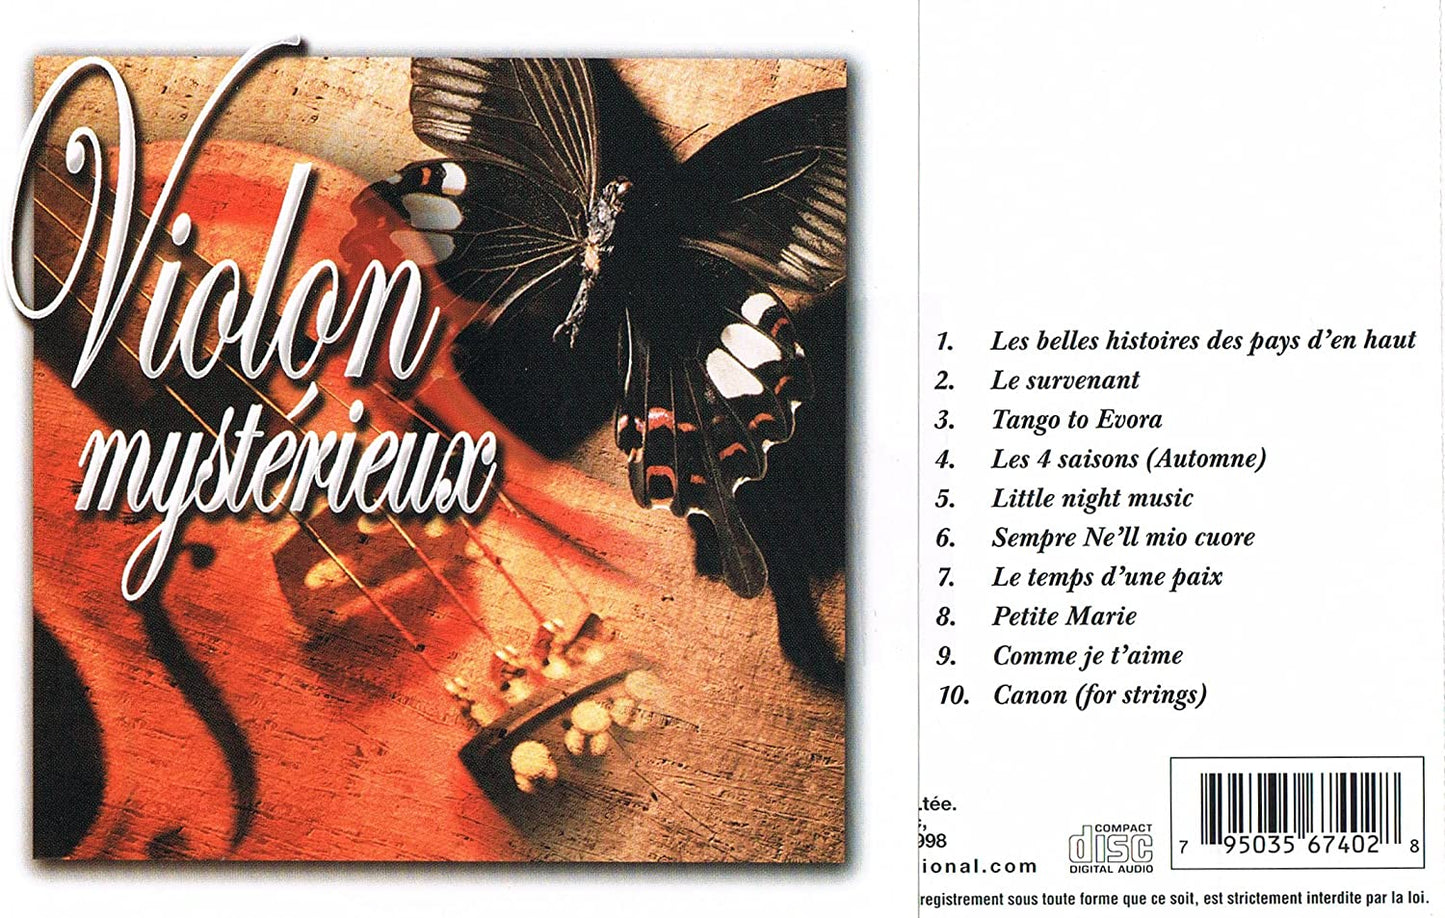 Violon Mysterieux - 10 Chansons instrumentales au Violon [Audio CD] Artistes Variés